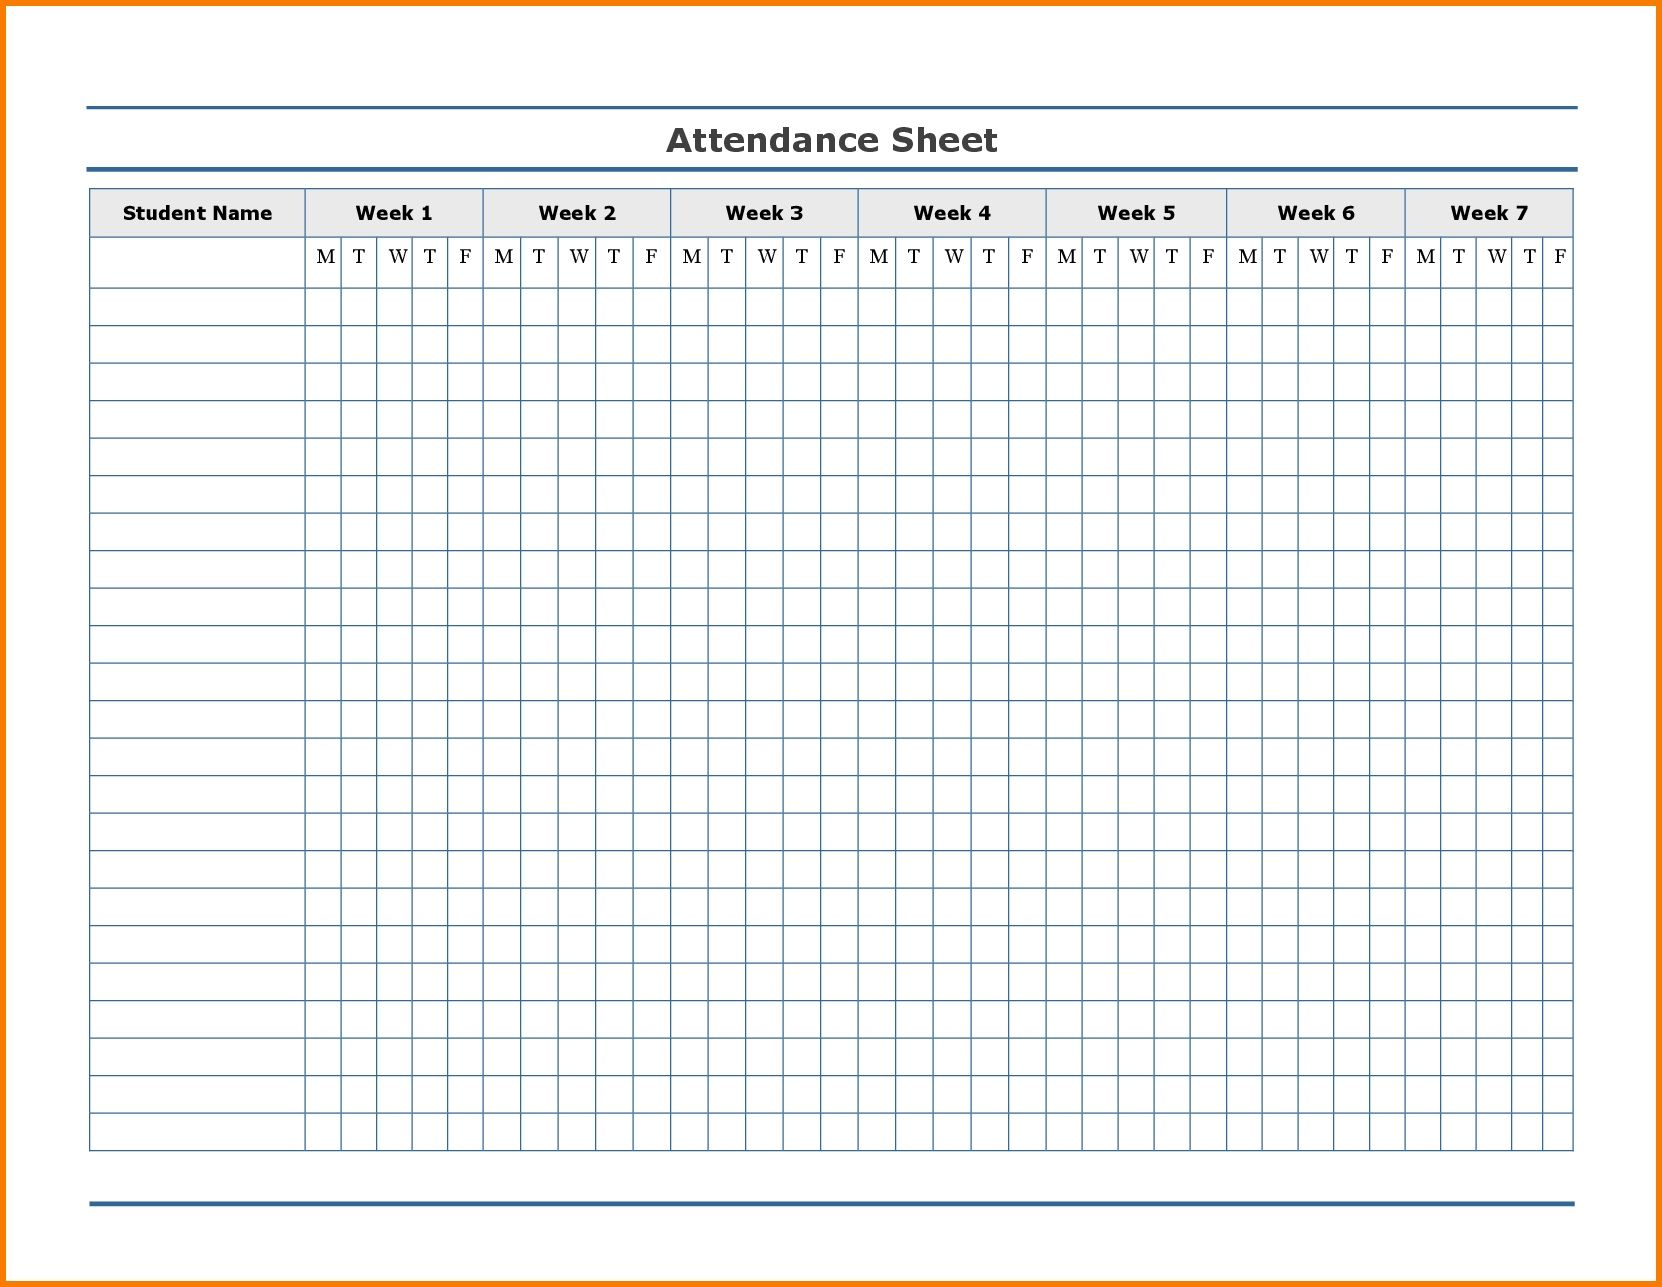 Free Employee Attendance Calendar | Employee Tracker regarding Free Printable 2020 Attendance Calendar